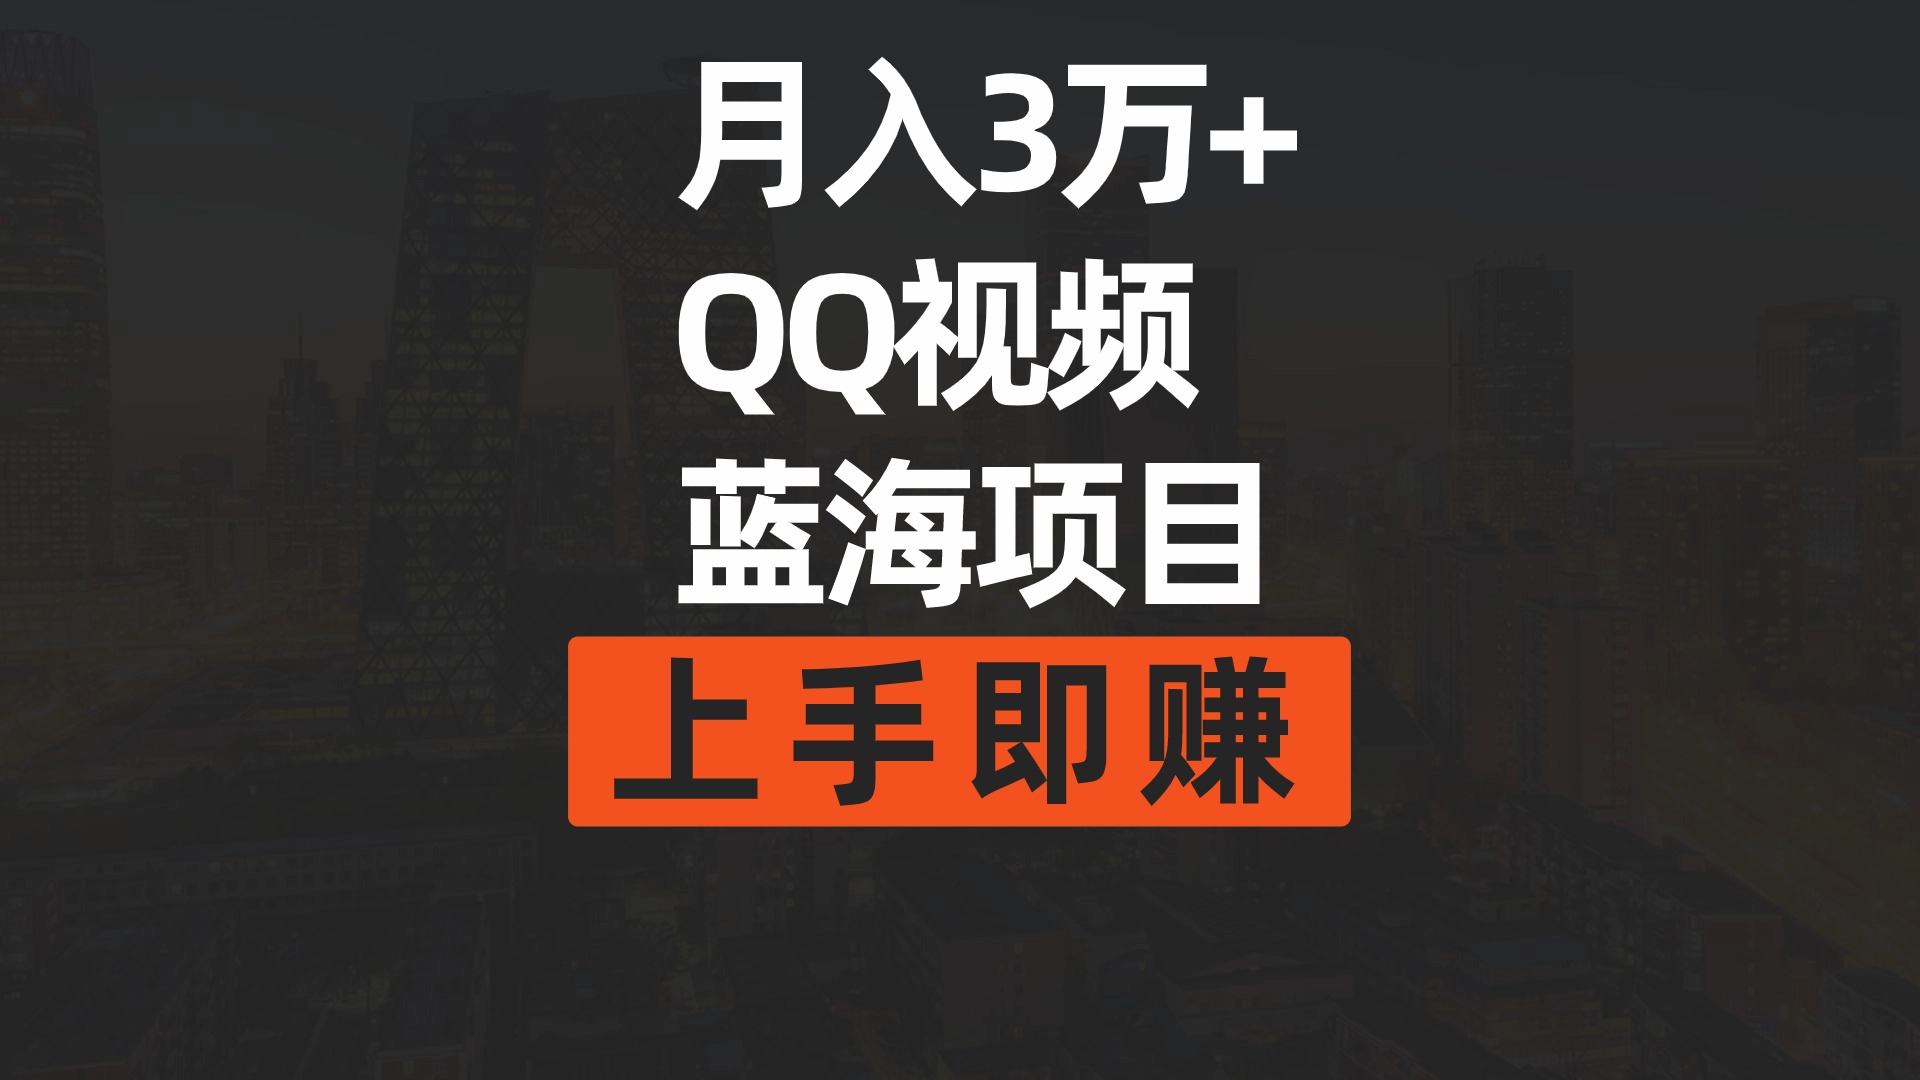 （9503期）月入3万+ 简单搬运去重QQ视频蓝海赛道 上手即赚插图